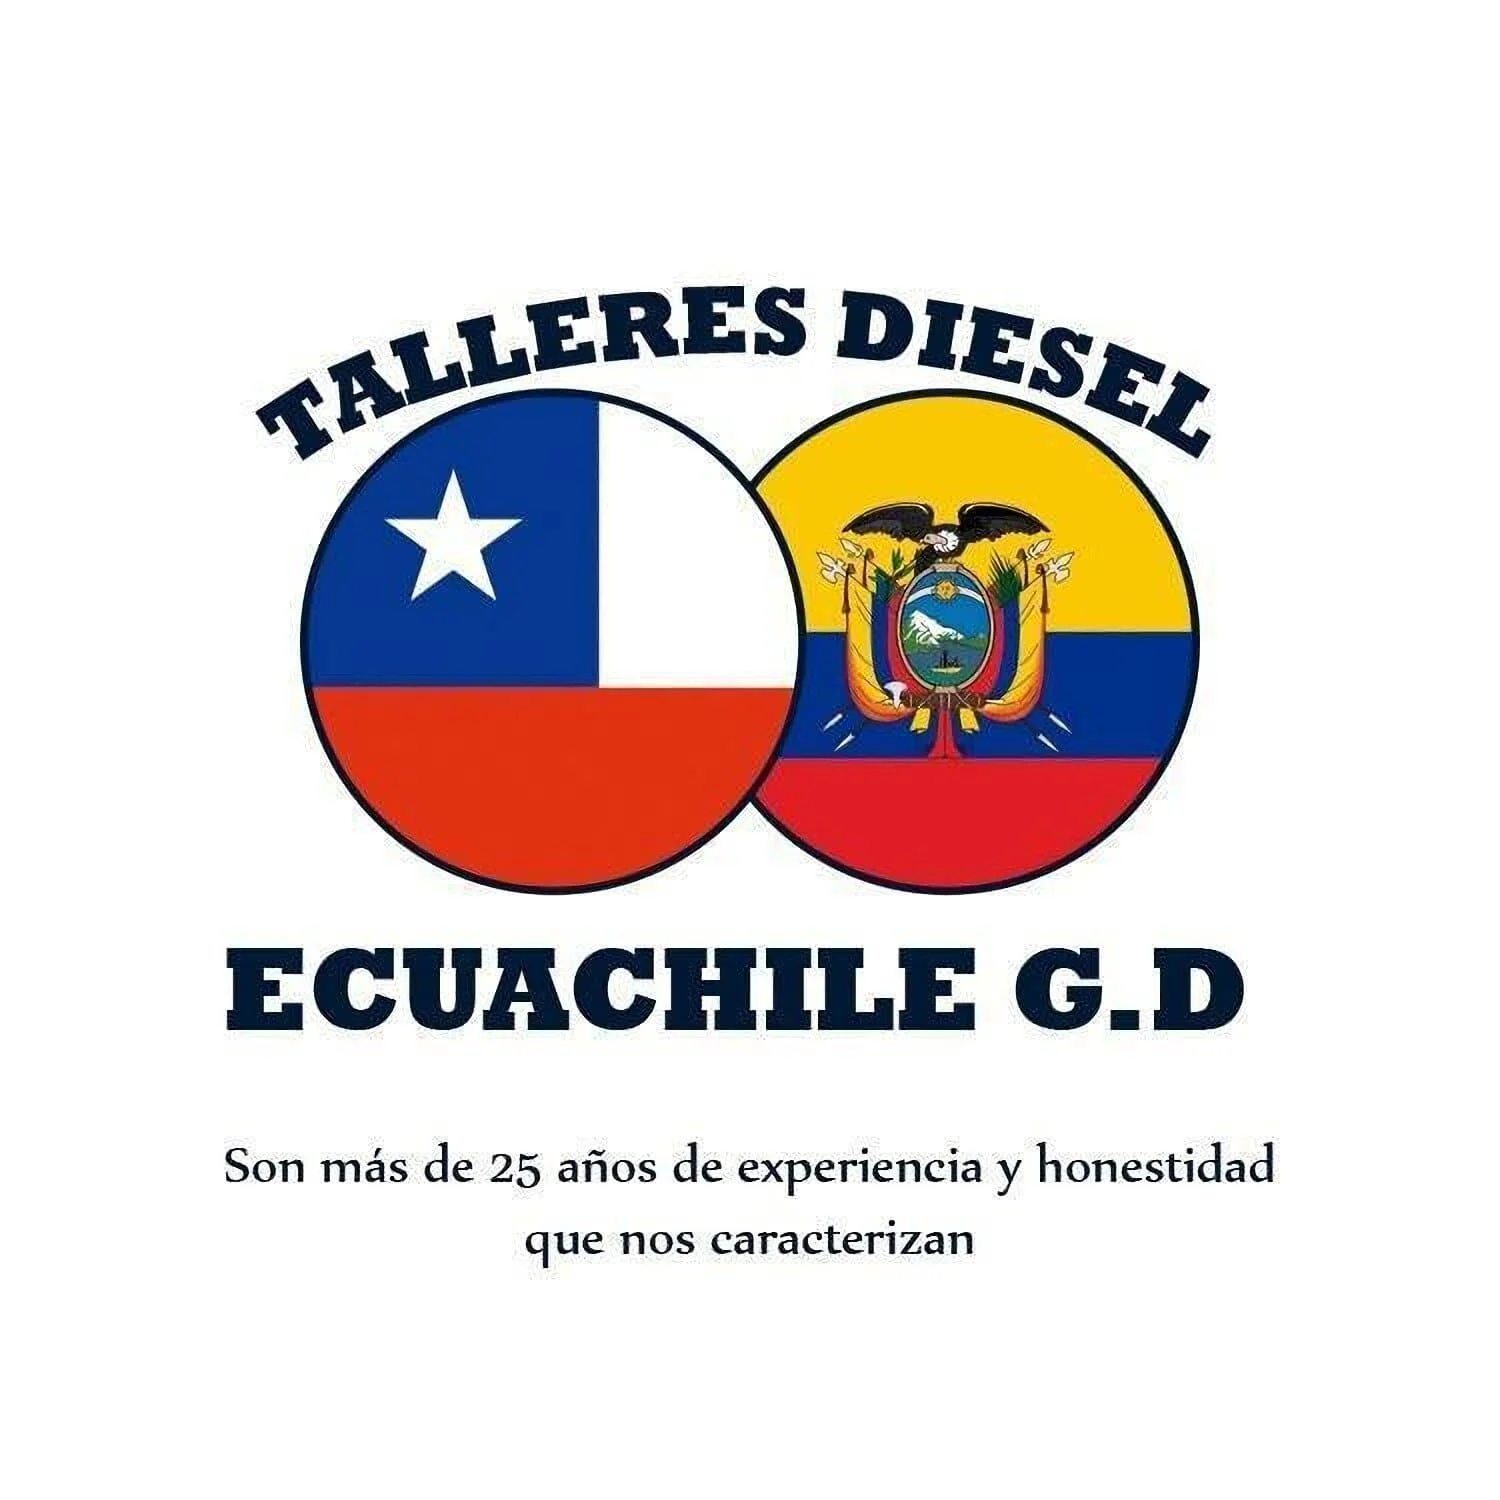 Talleres Diesel Ecuachile G.D.-2801